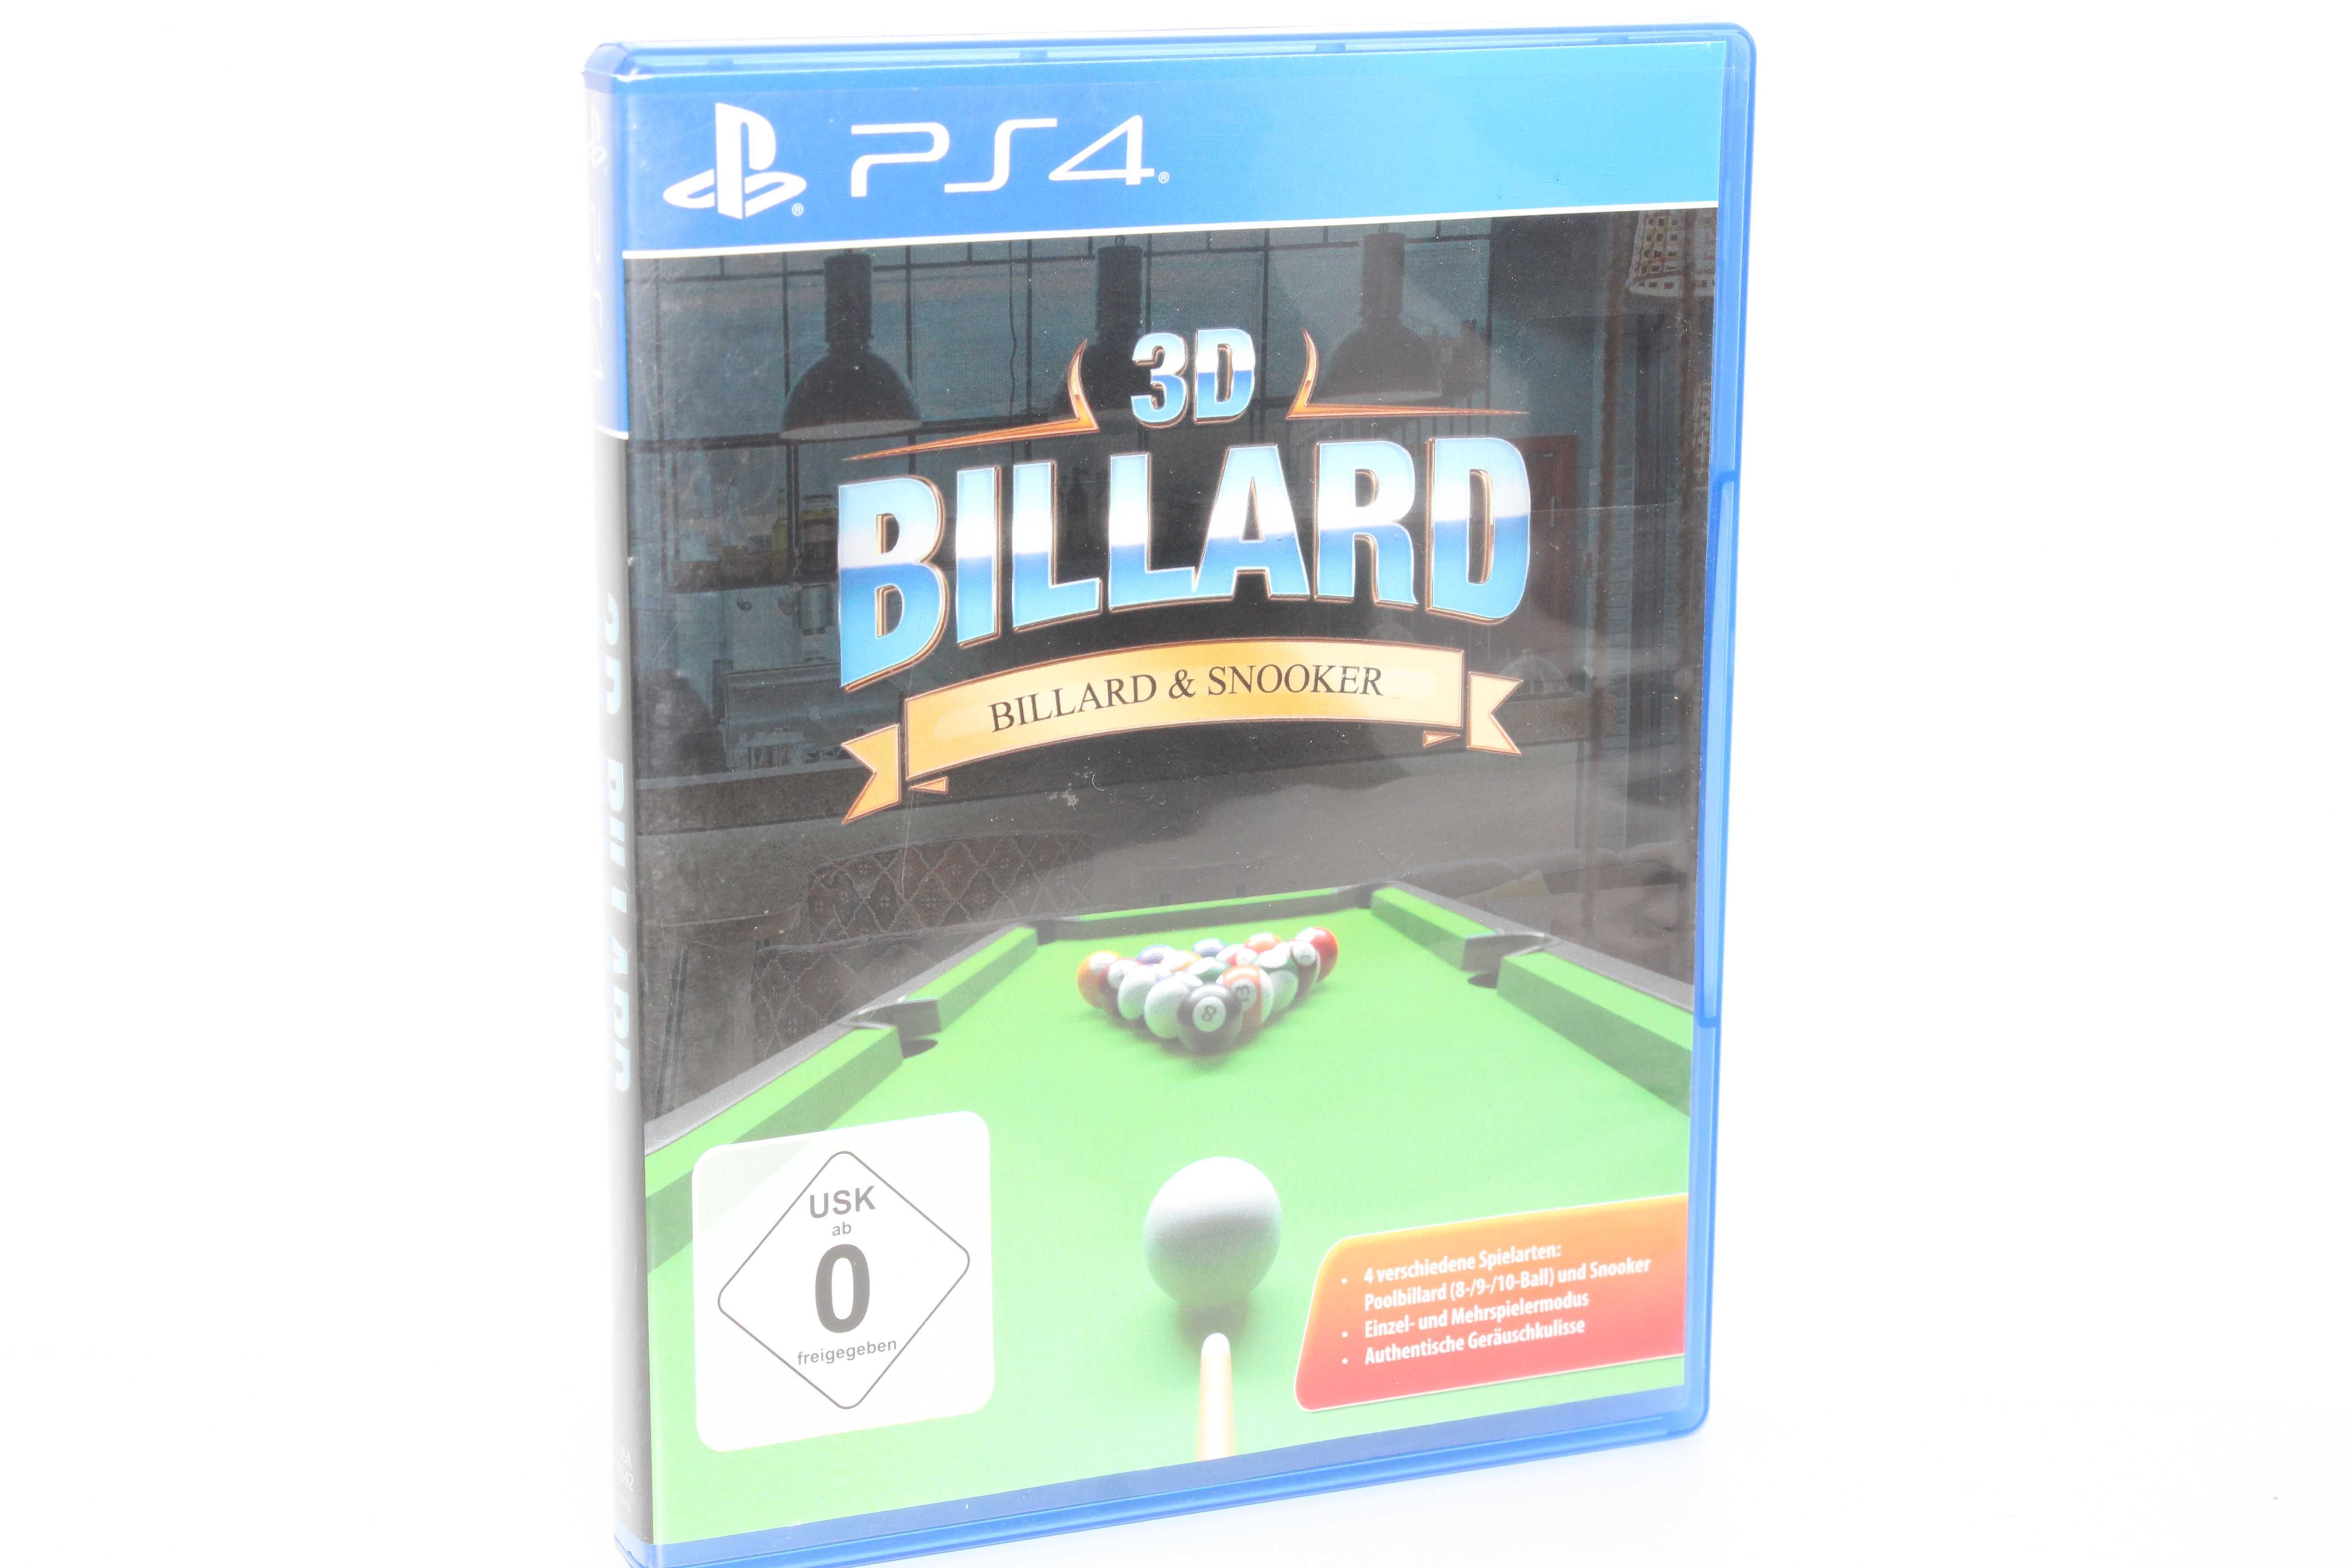 Billard 3D PS4 GameBAZA UNIKAT